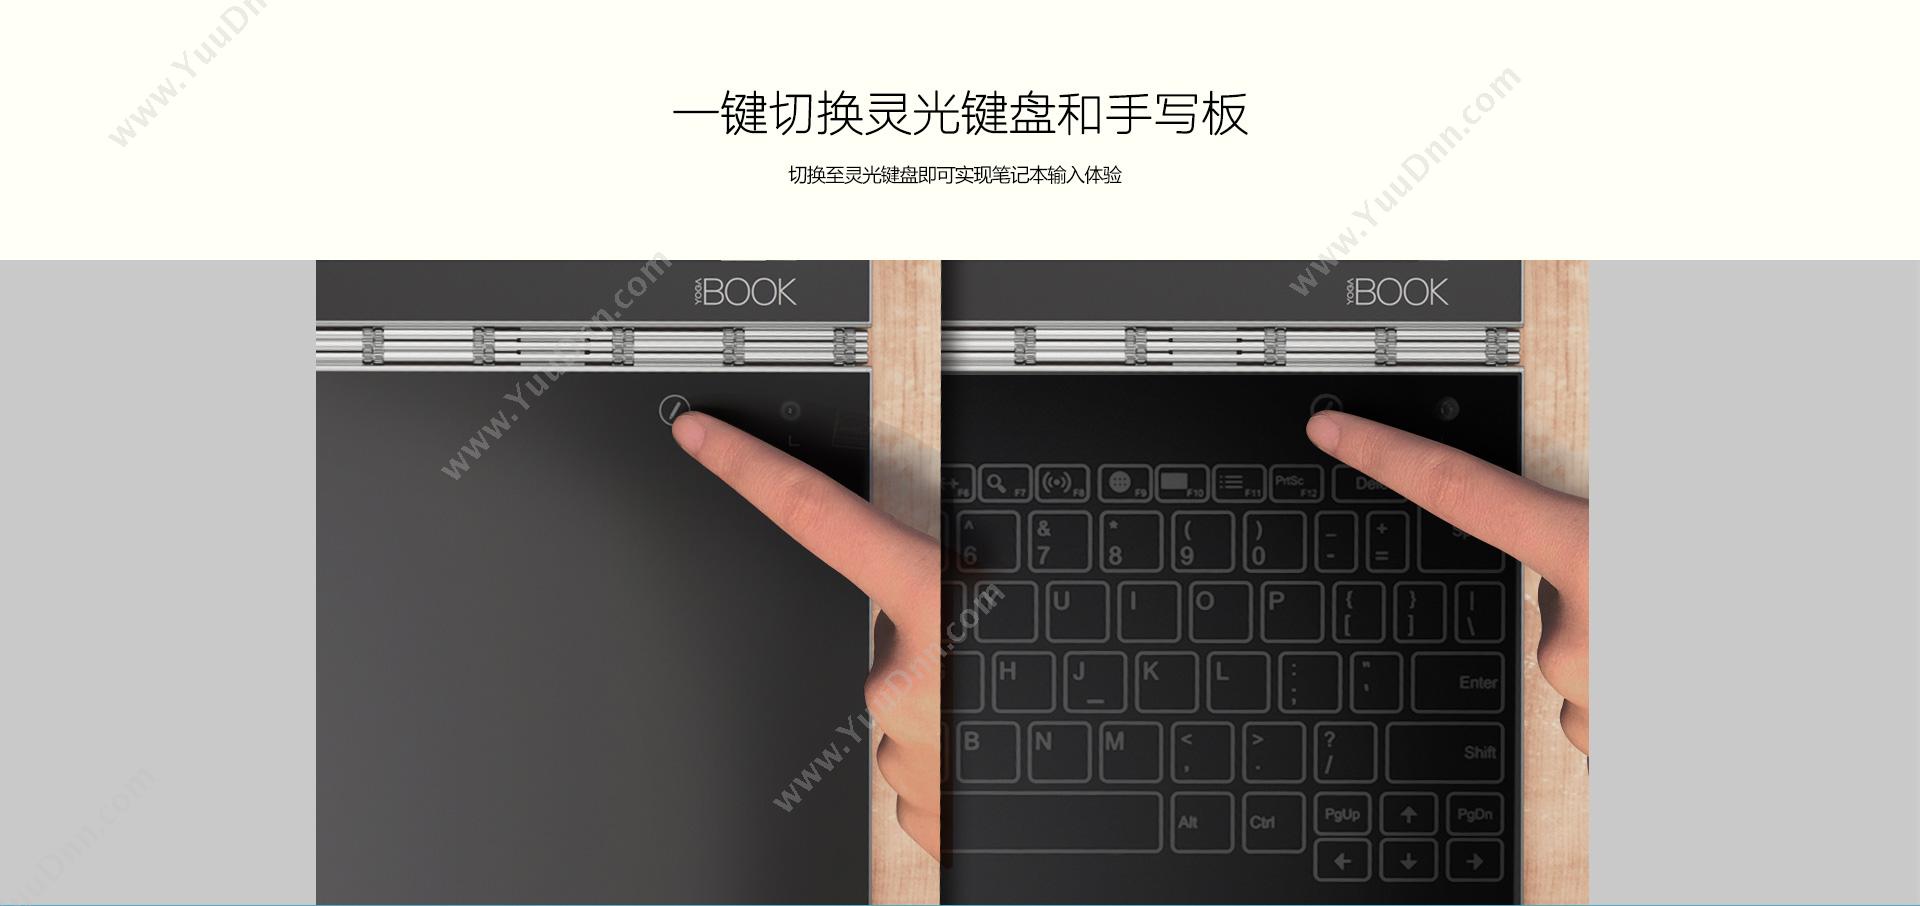 联想 Lenovo YB1-X91F 【YOGA BOOK】  4G+128G Windows版（白）  10英寸 四核 2.4GHZ  分辨率1920*1200  二合一虚拟键盘 平板电脑